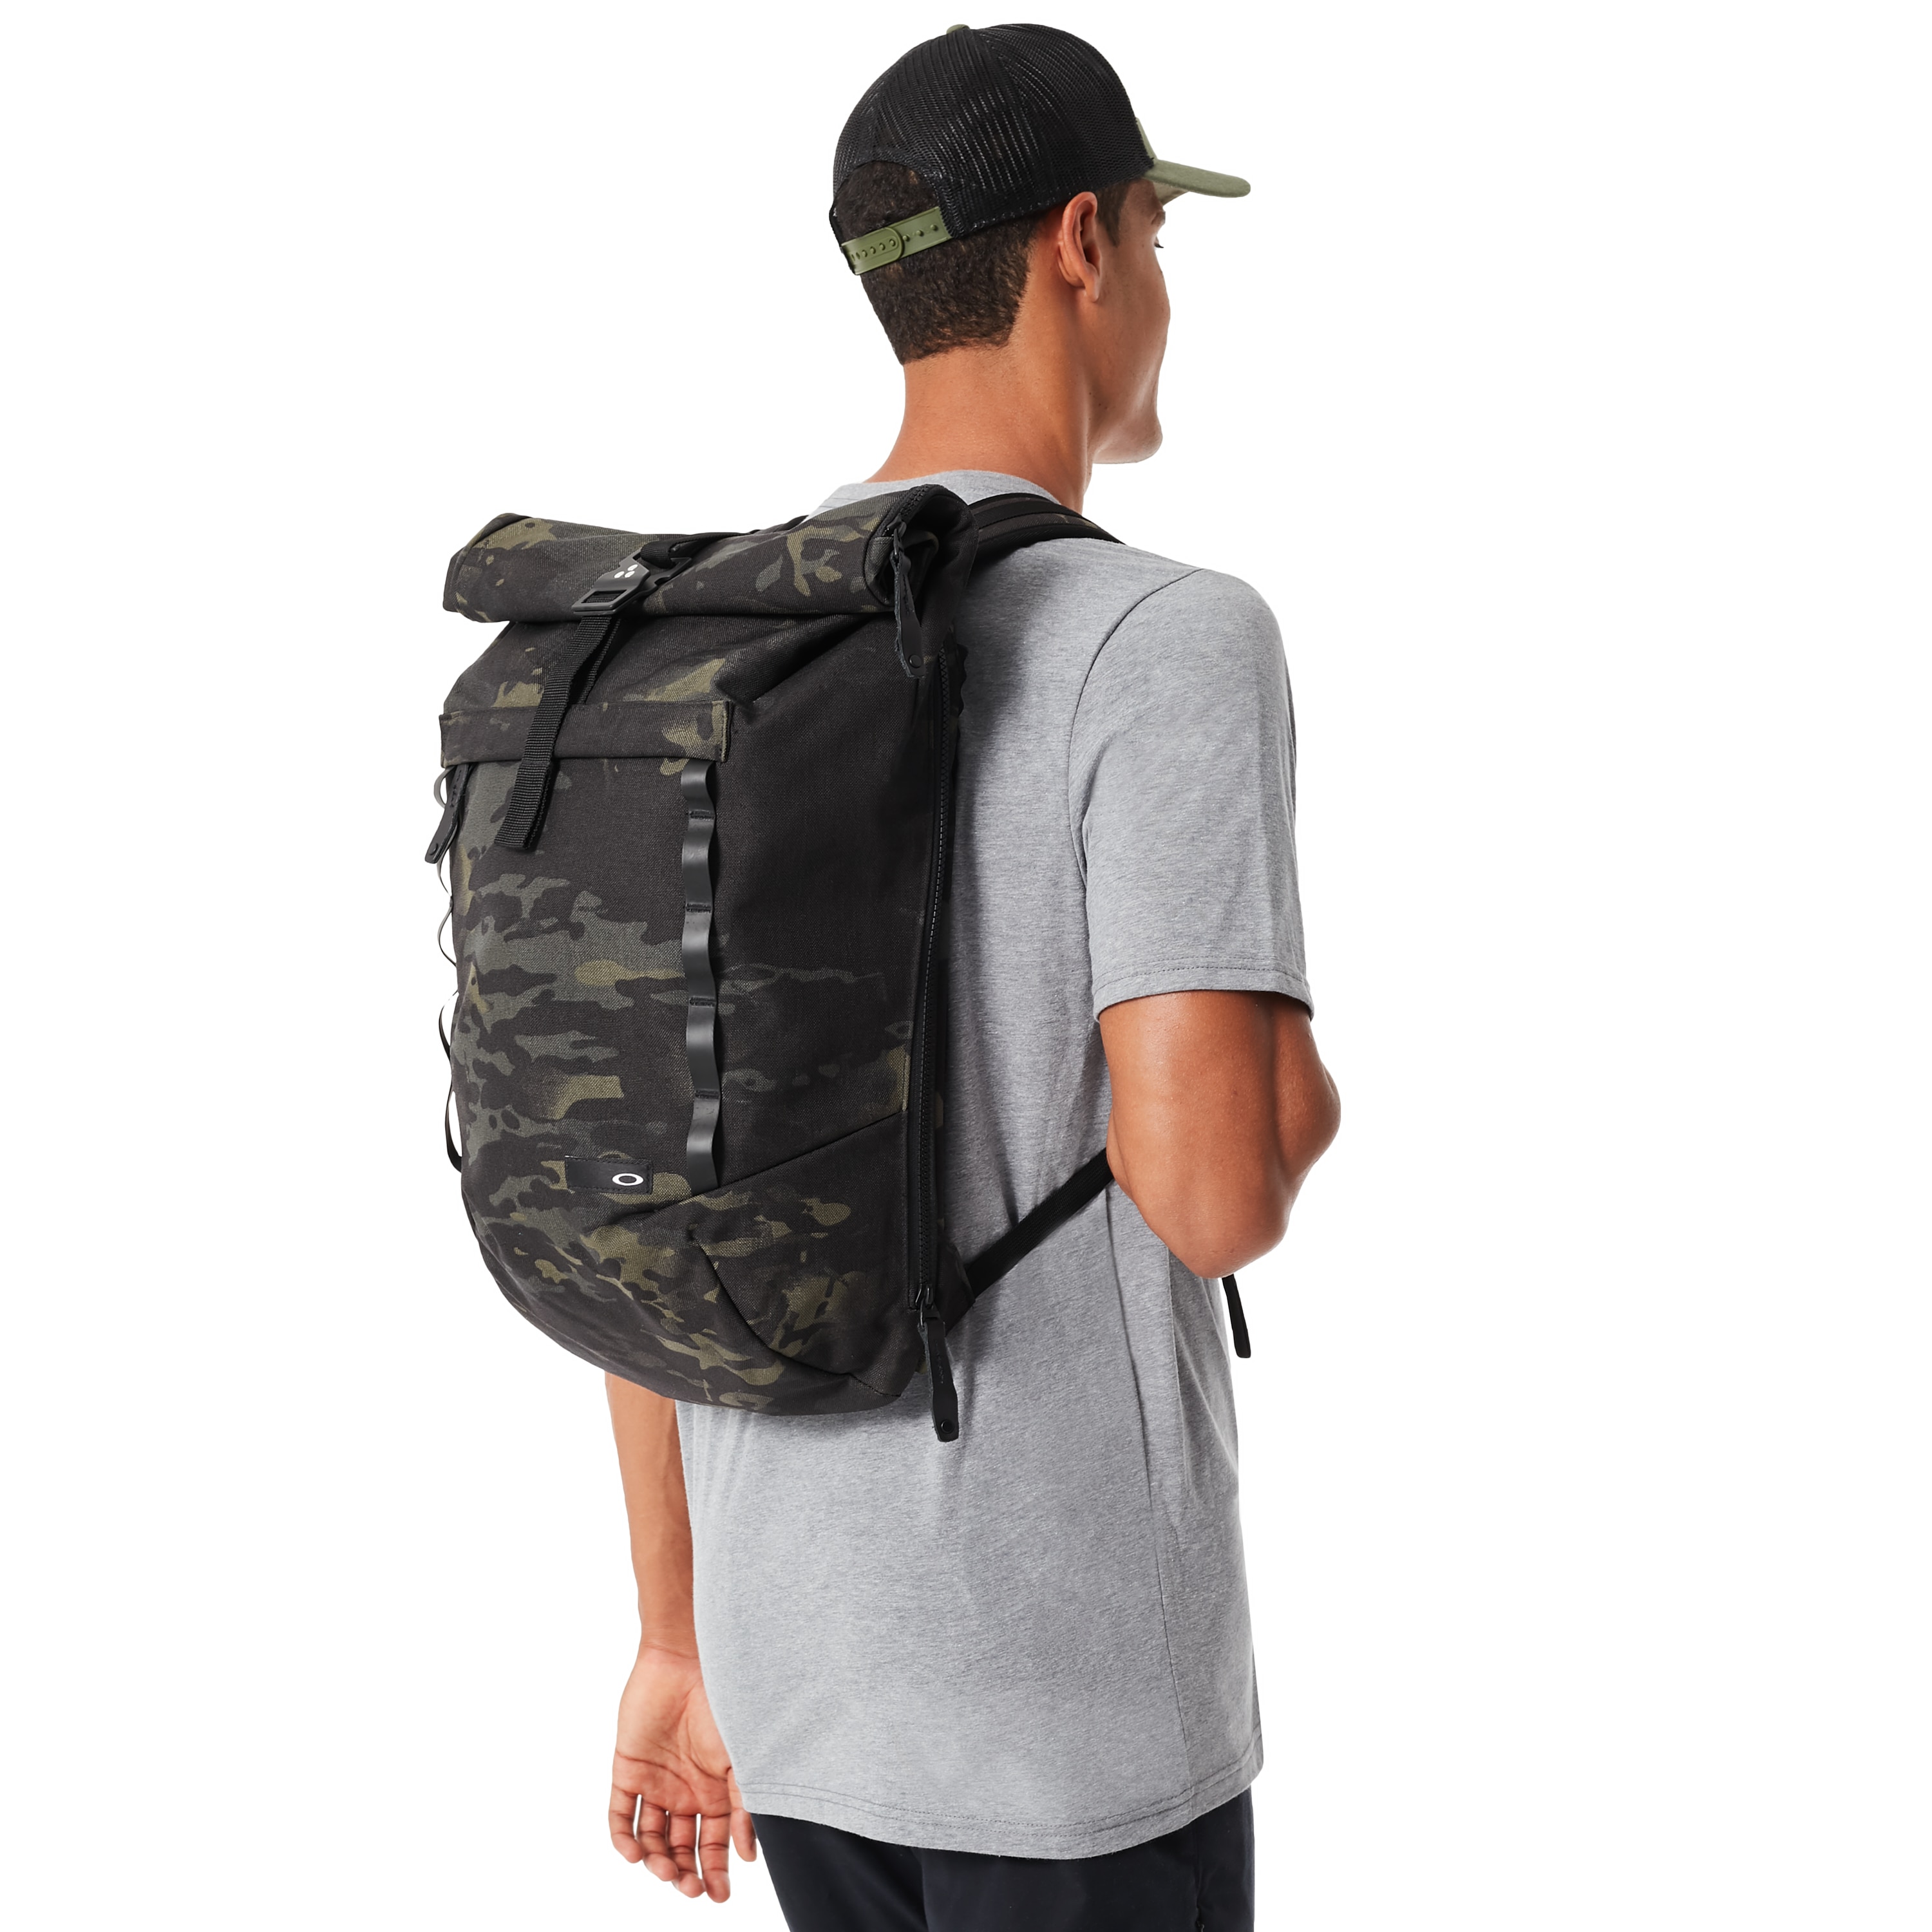 oakley roll top backpack